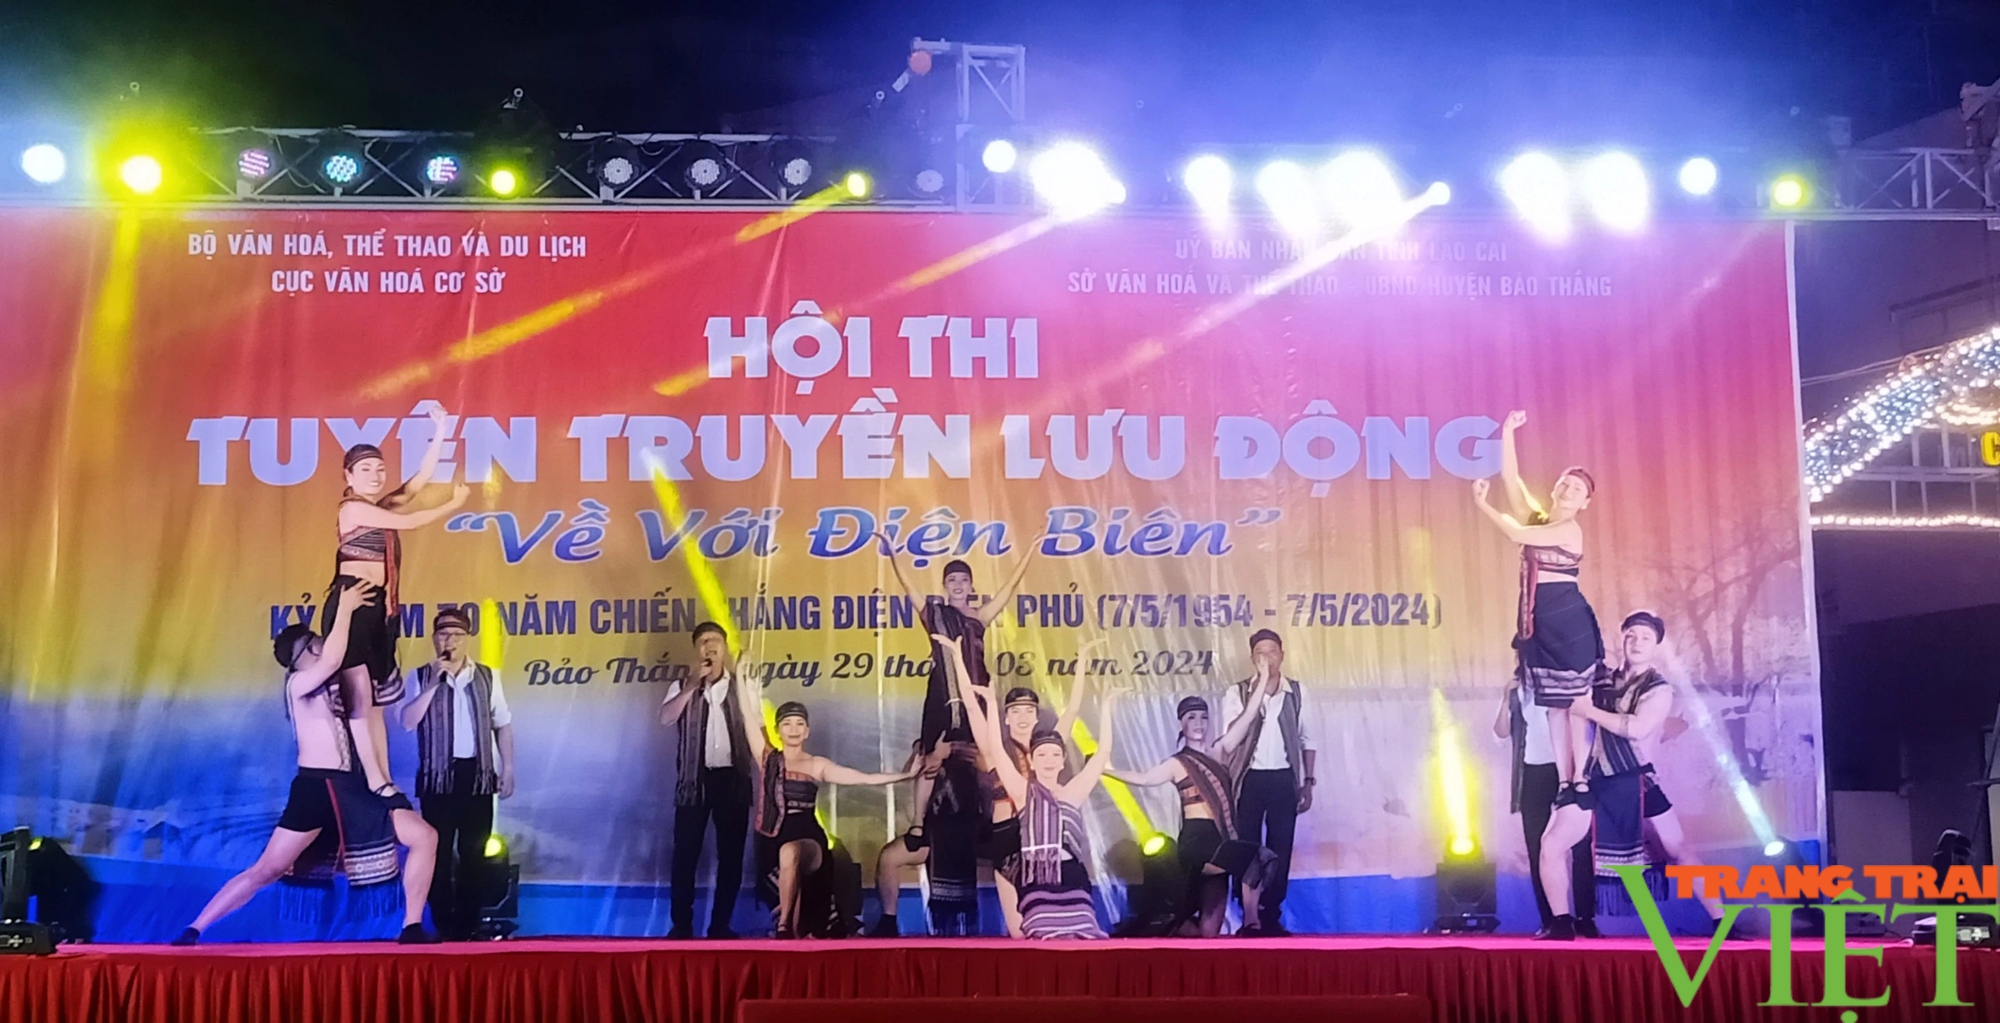 Tưng bừng hội thi "Về với Điện Biên" ở một huyện của Lào Cai, thu hút hàng nghìn khán giả- Ảnh 2.